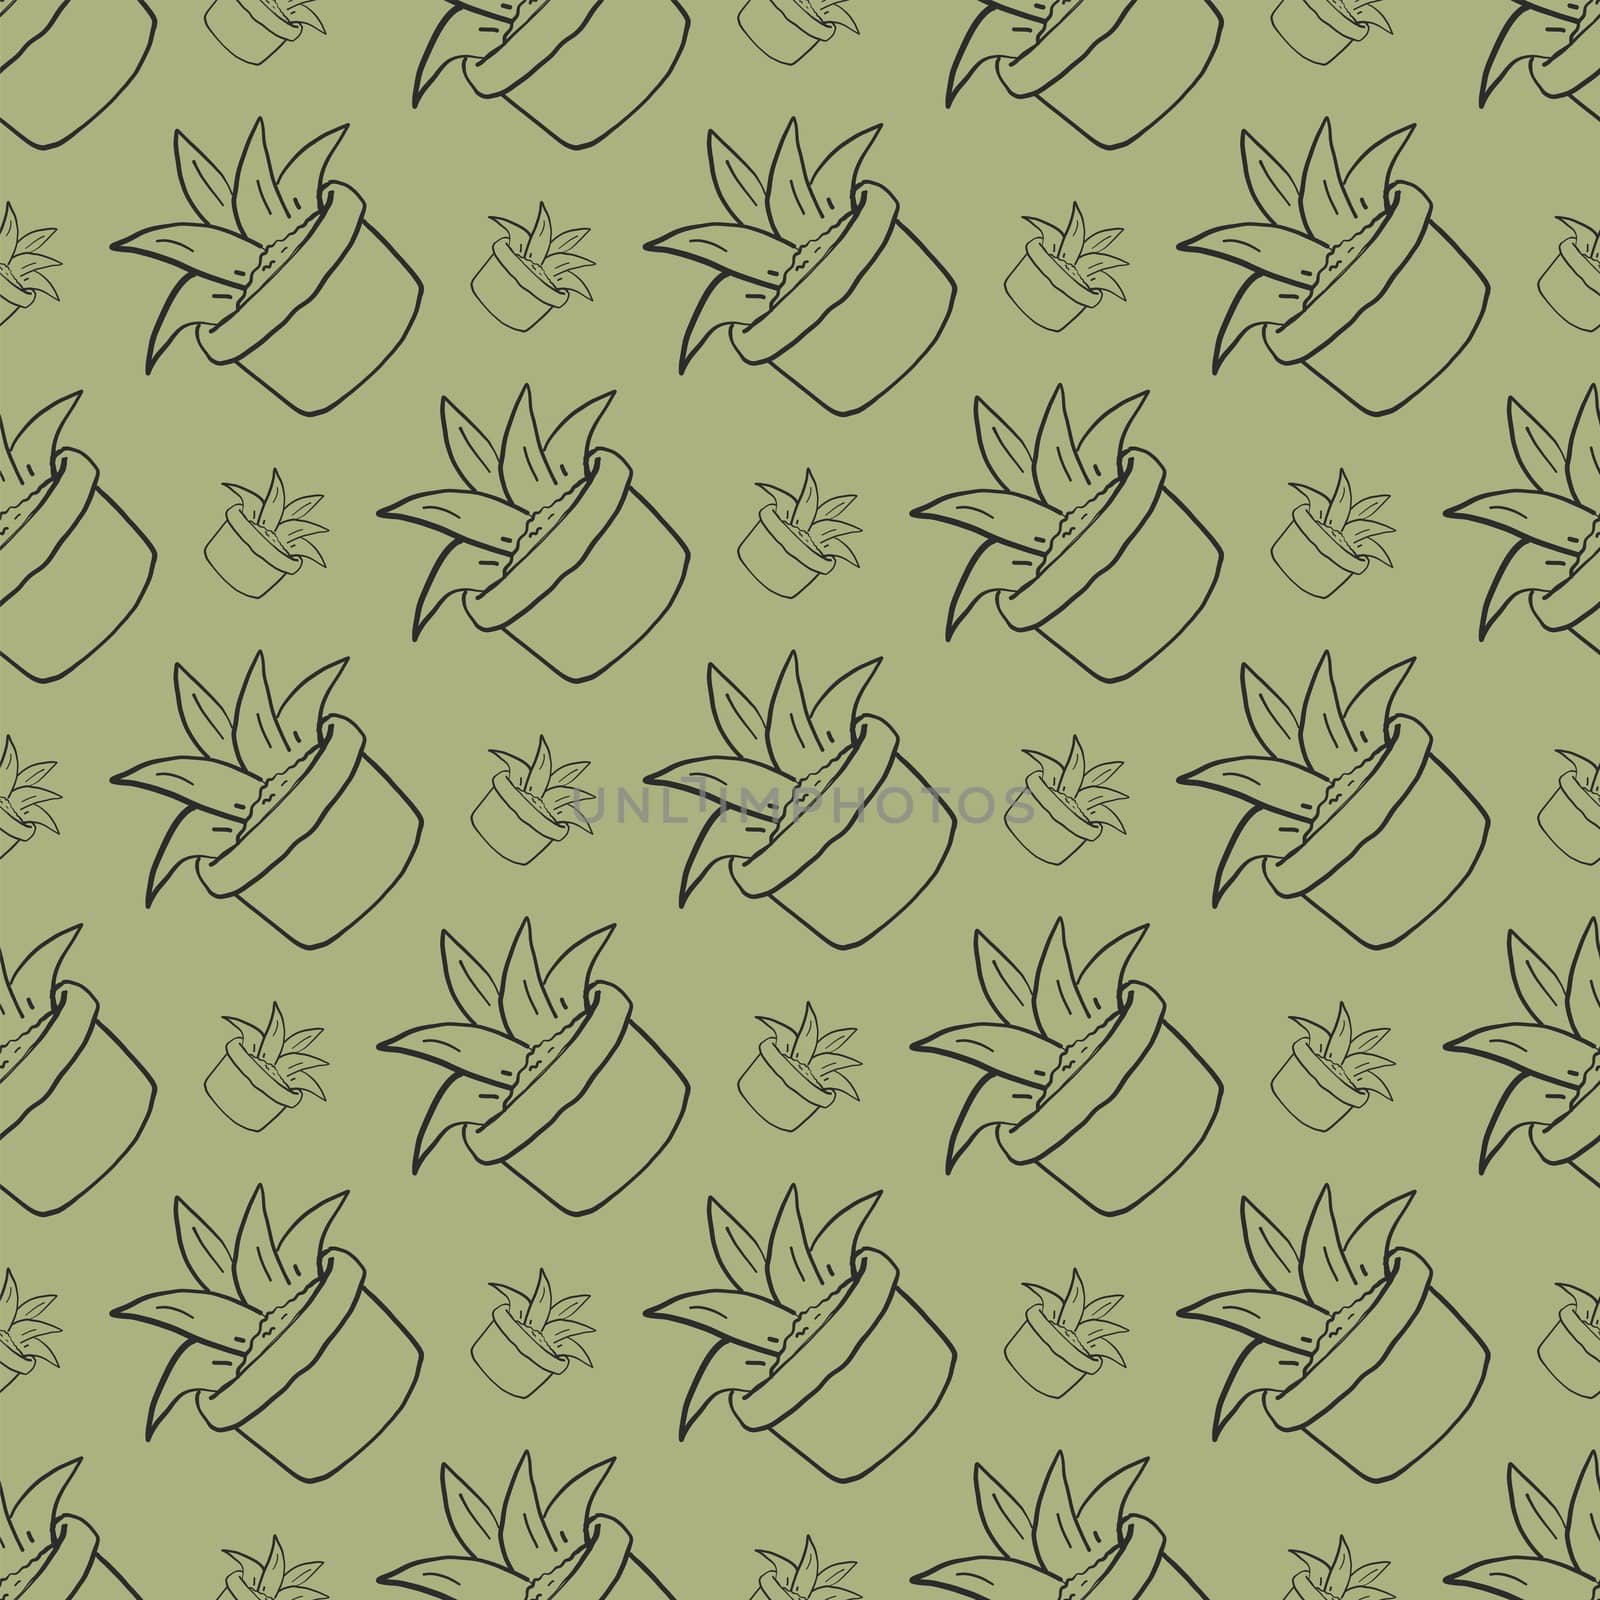 Aloe pattern , illustration, vector on white background by Morphart